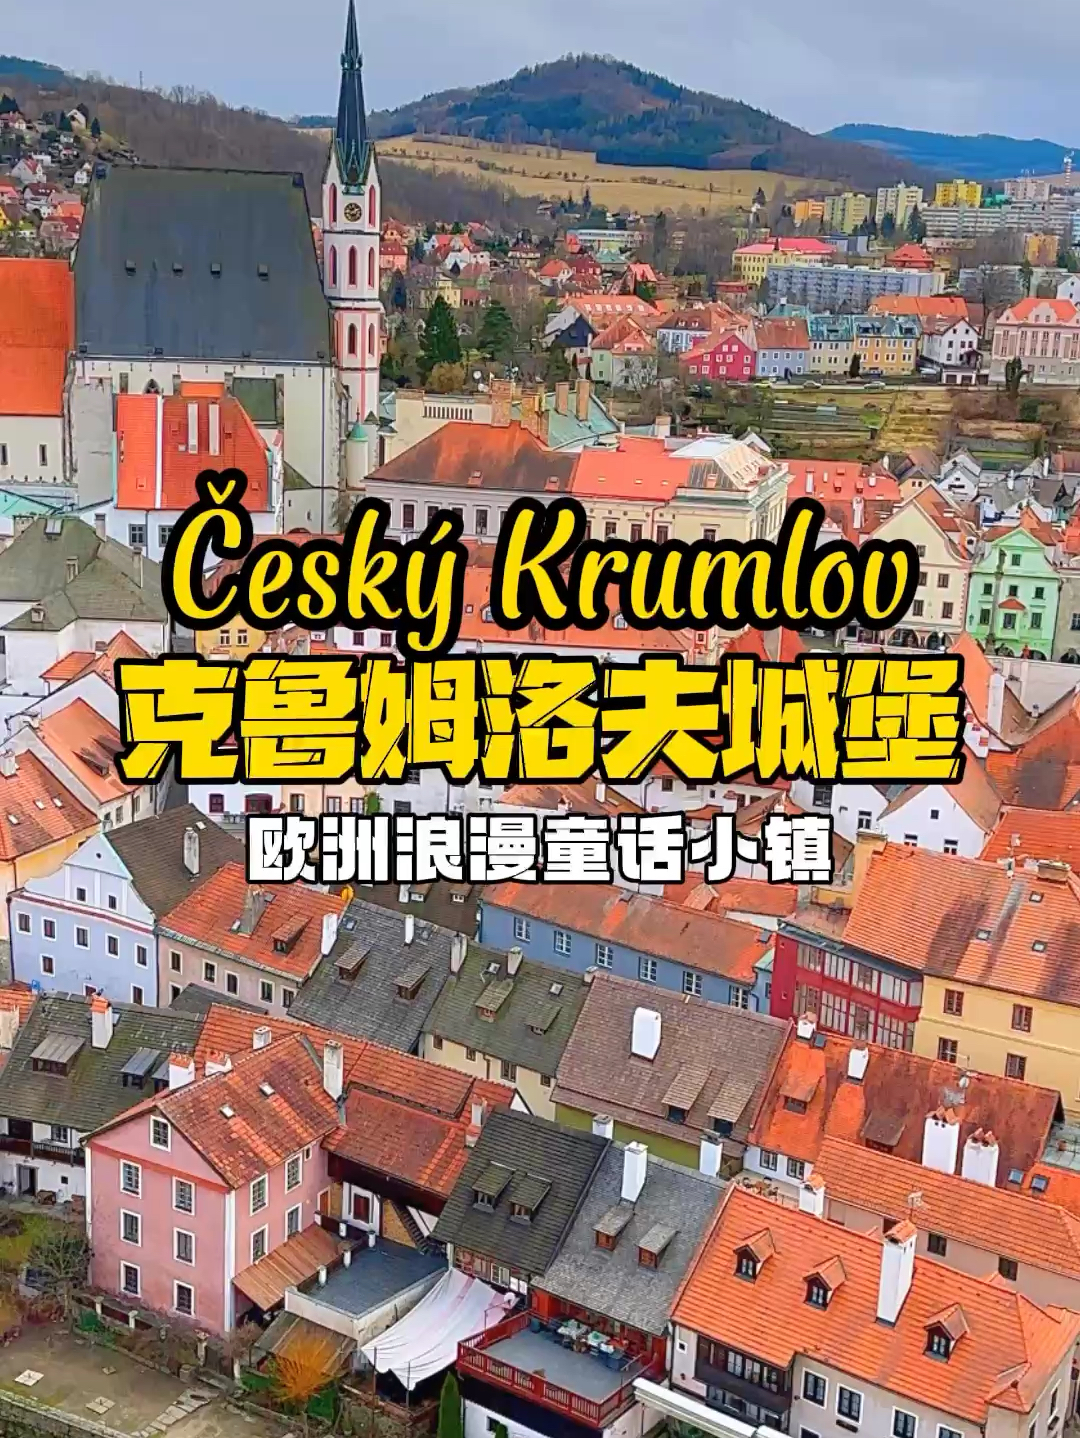 打卡世界最美欧洲CK小镇克鲁姆洛夫